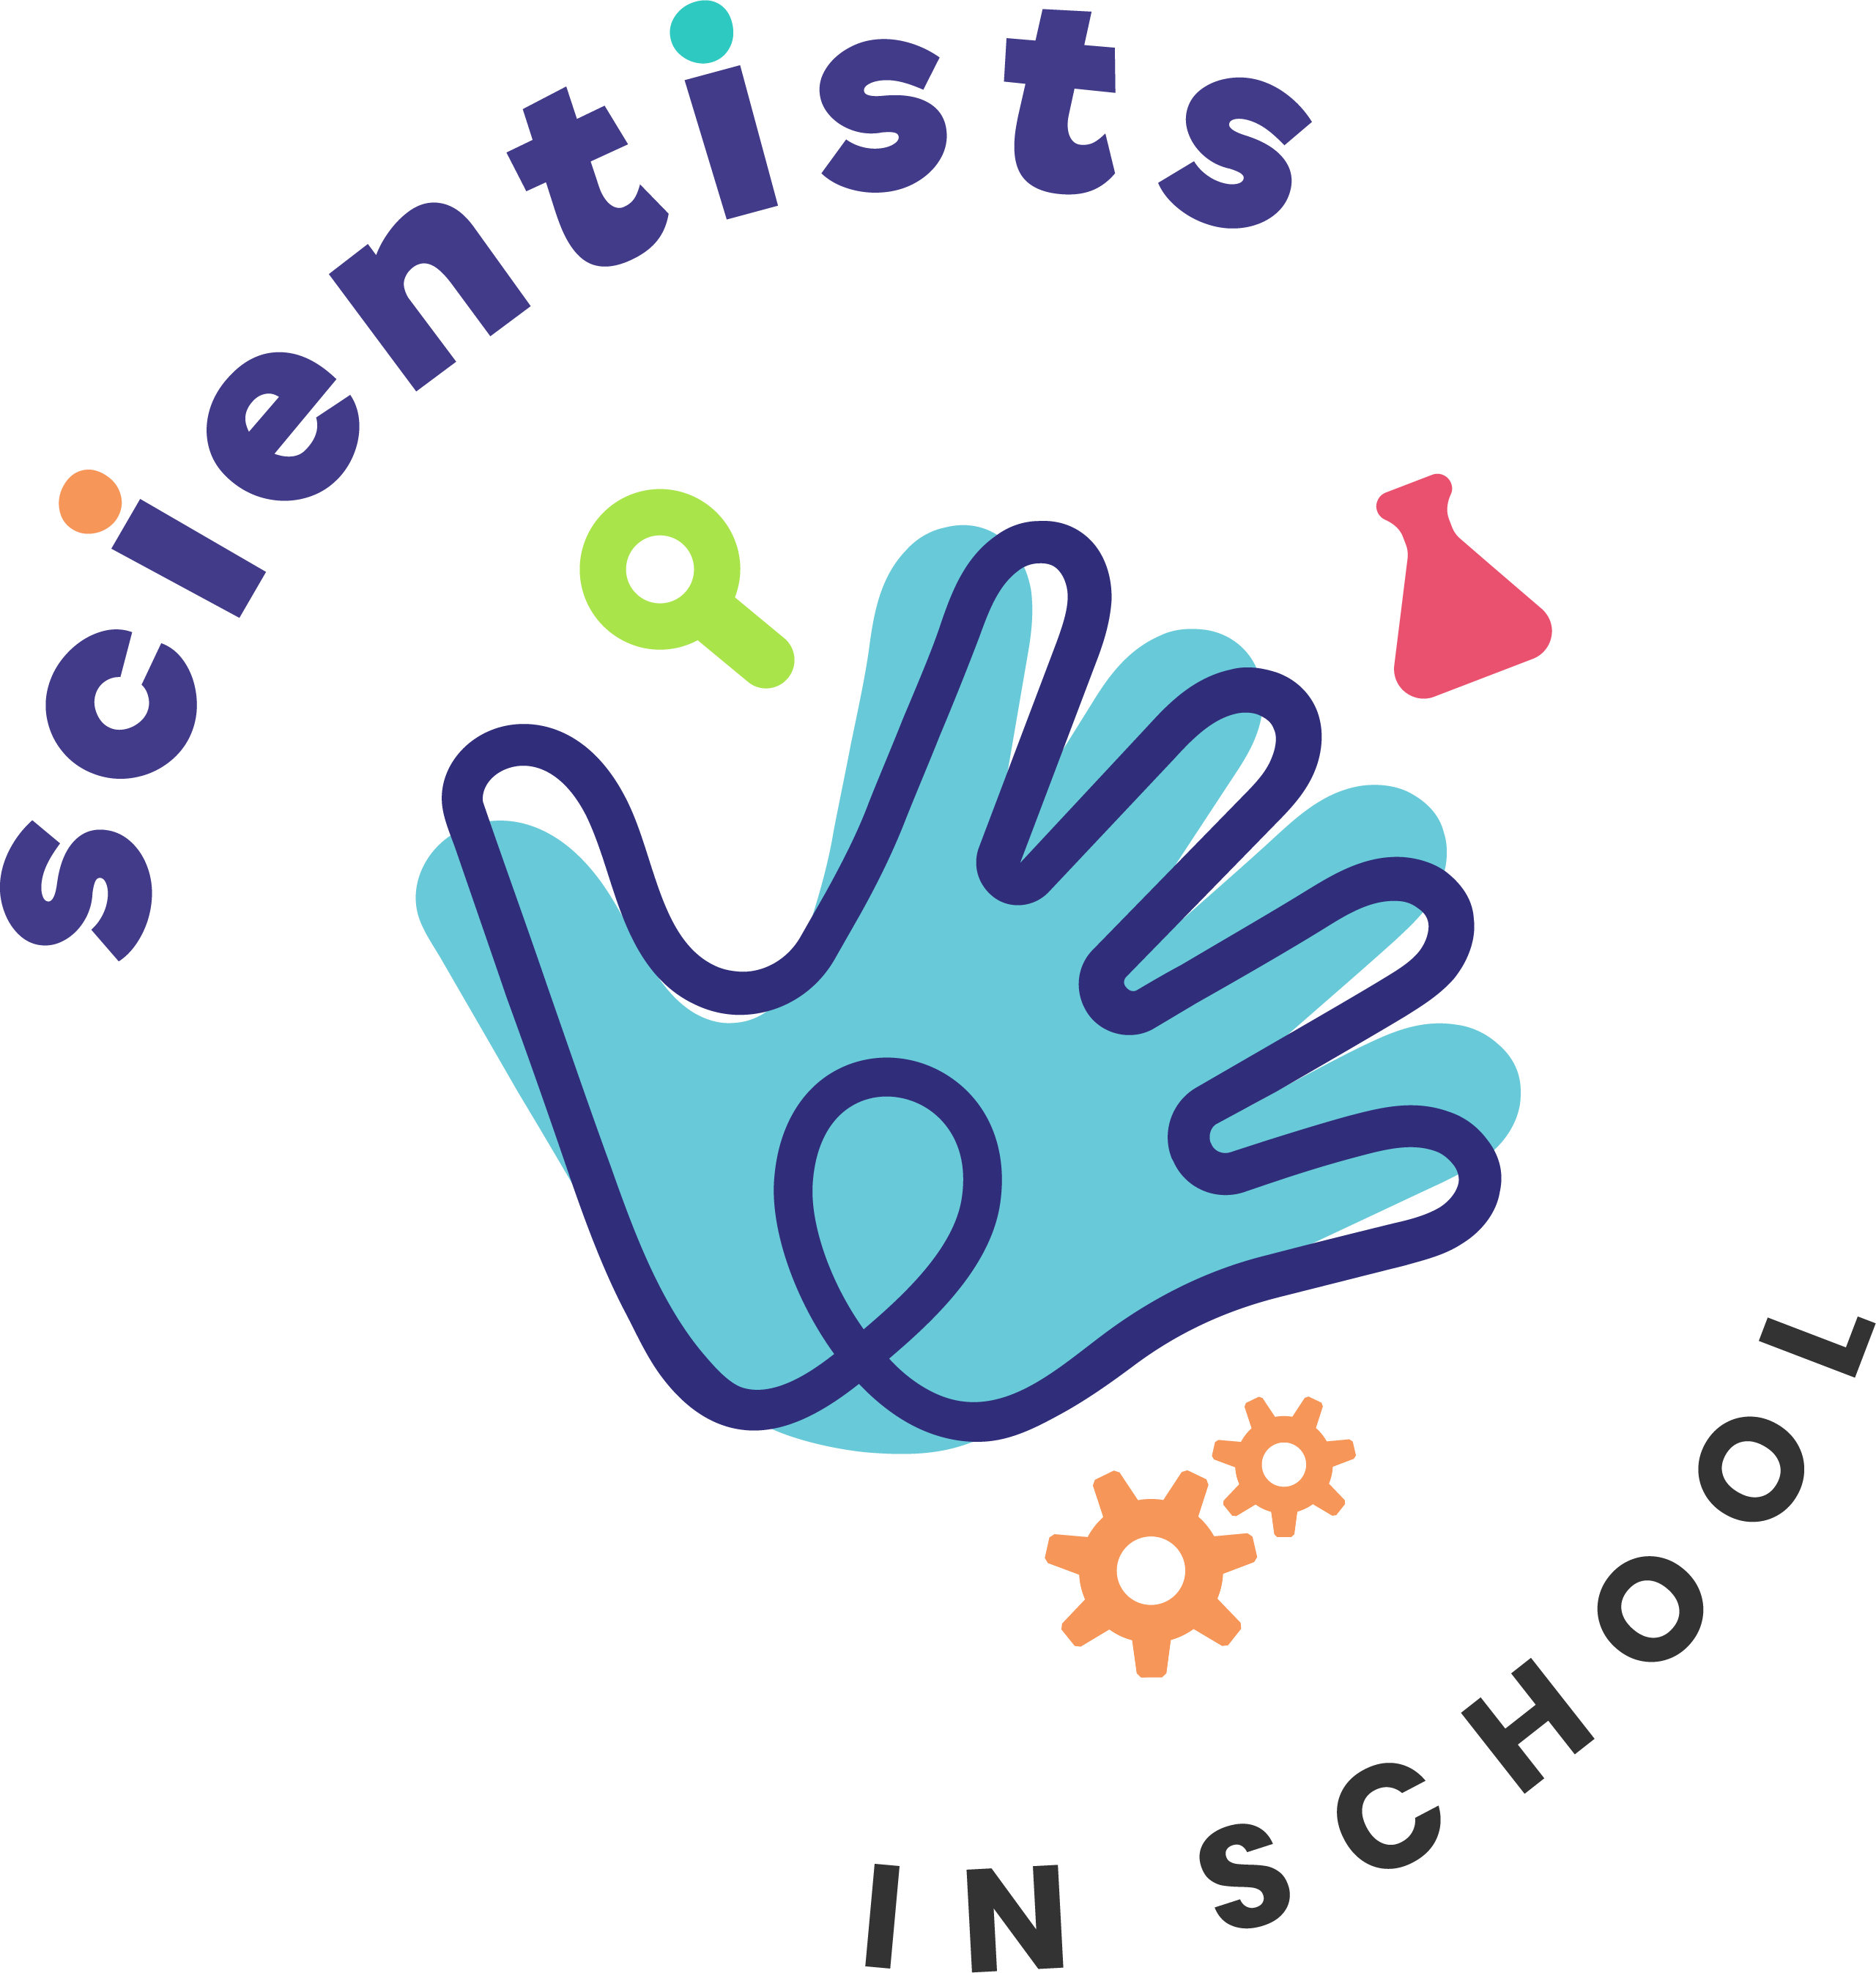 Scientists in School